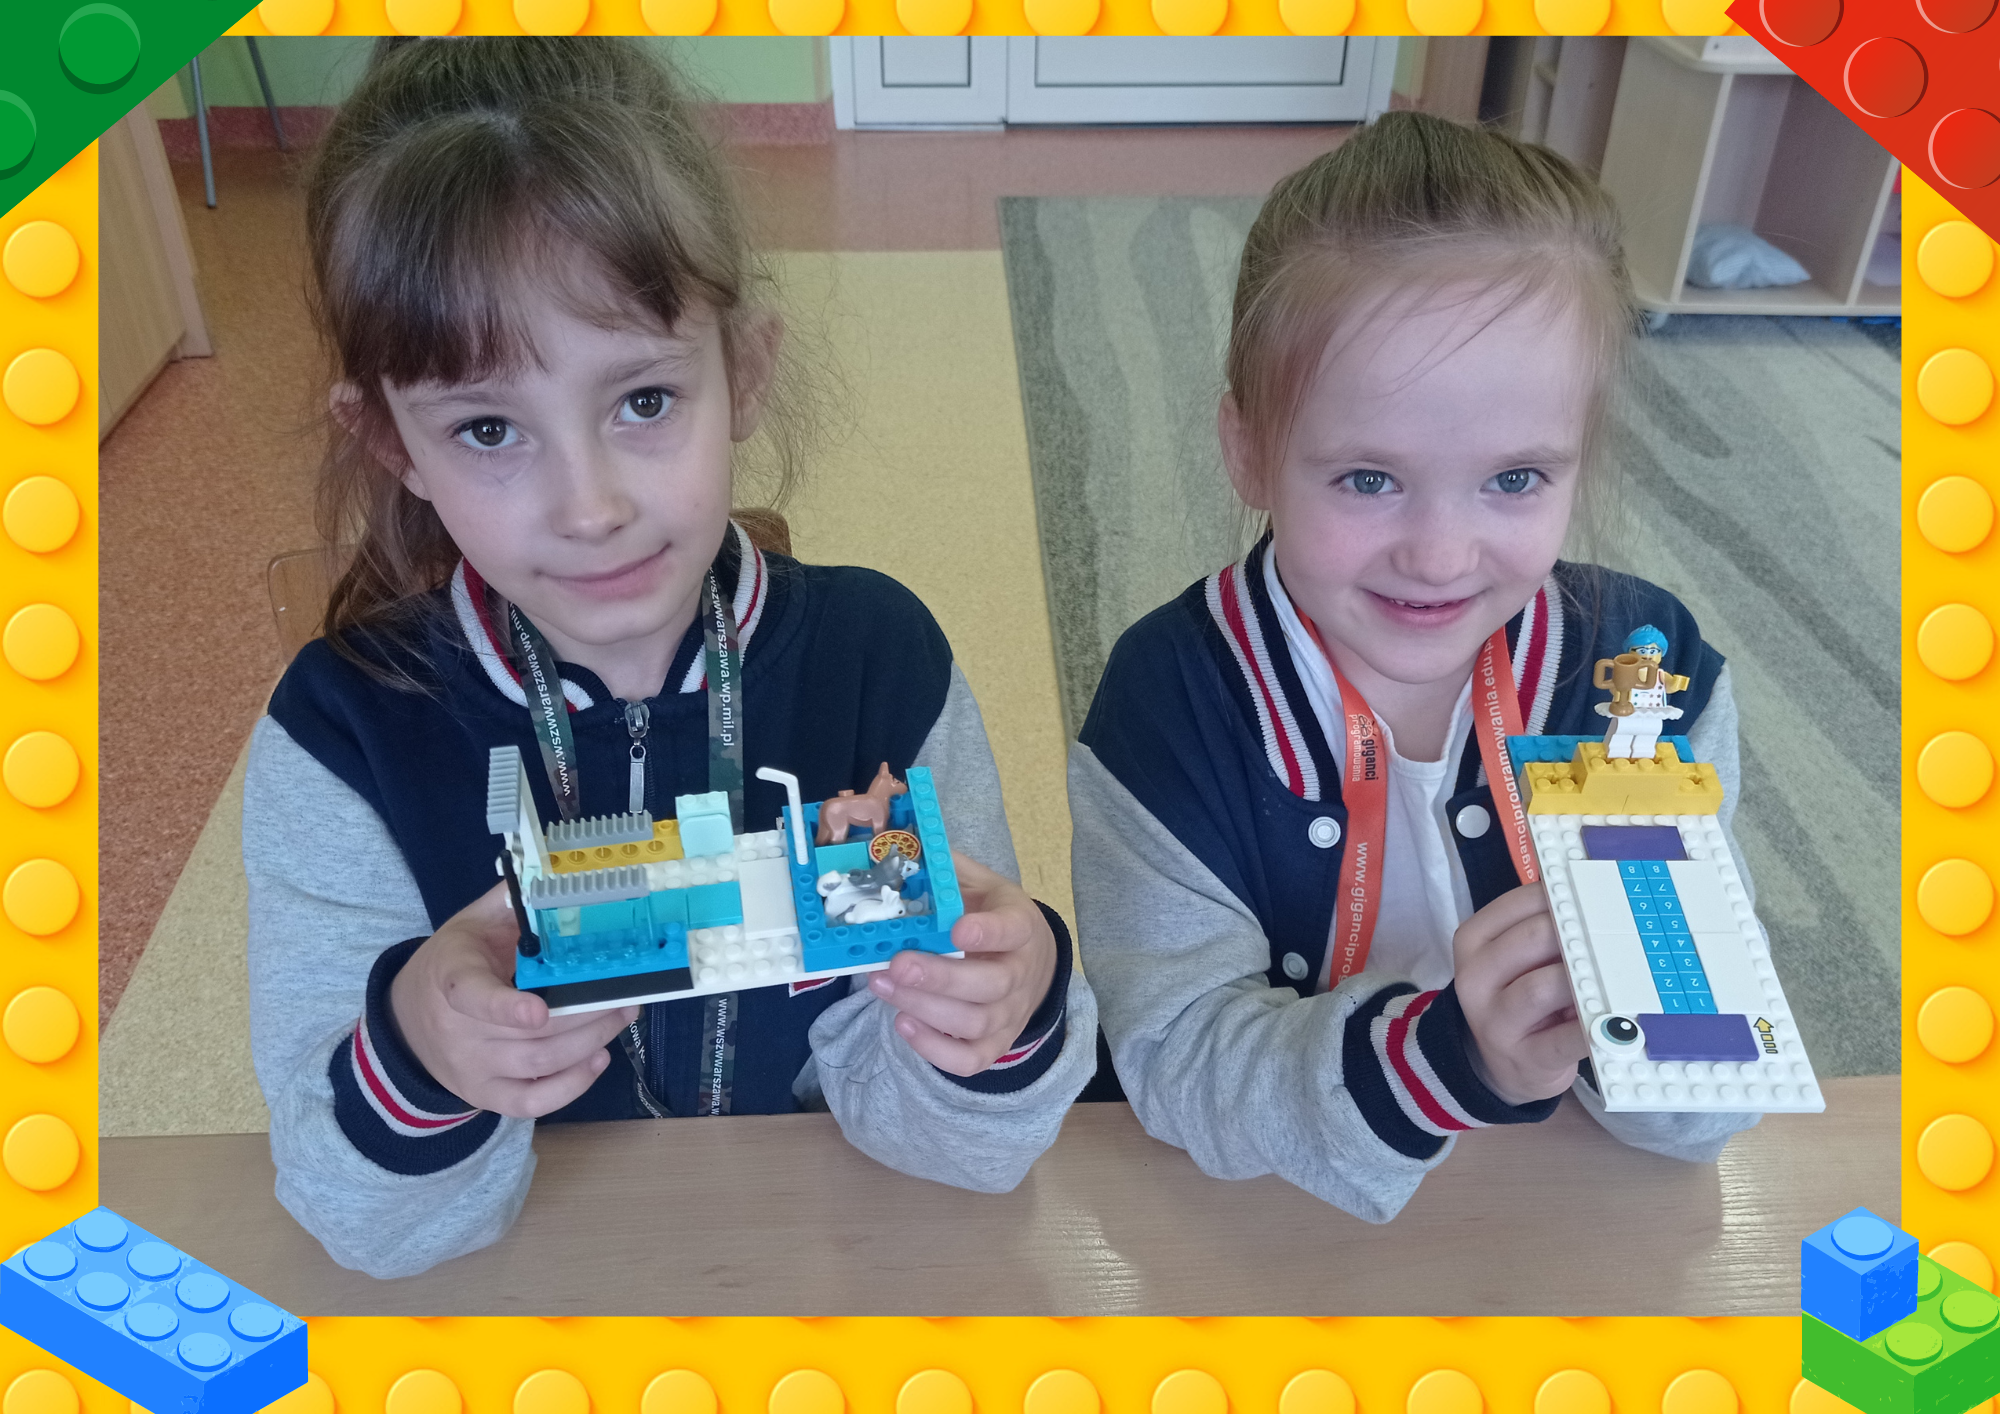 Lego Education w świetlicy. Dziewczynki prezentują swoje modele.